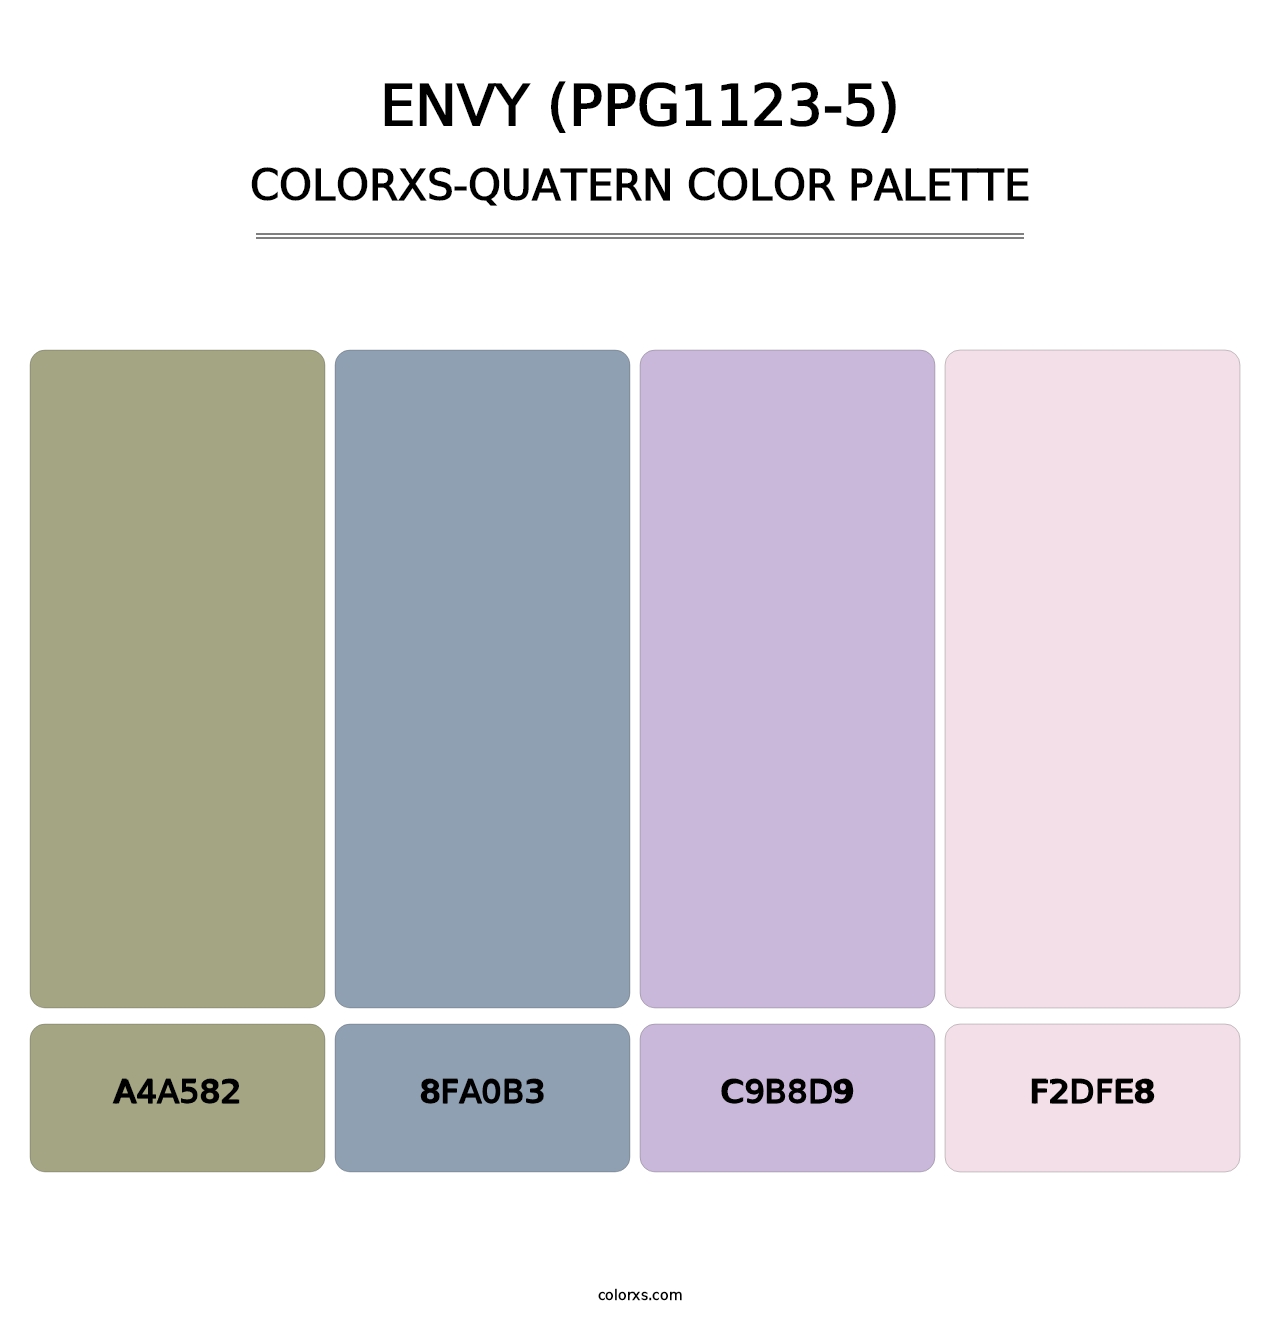 Envy (PPG1123-5) - Colorxs Quatern Palette